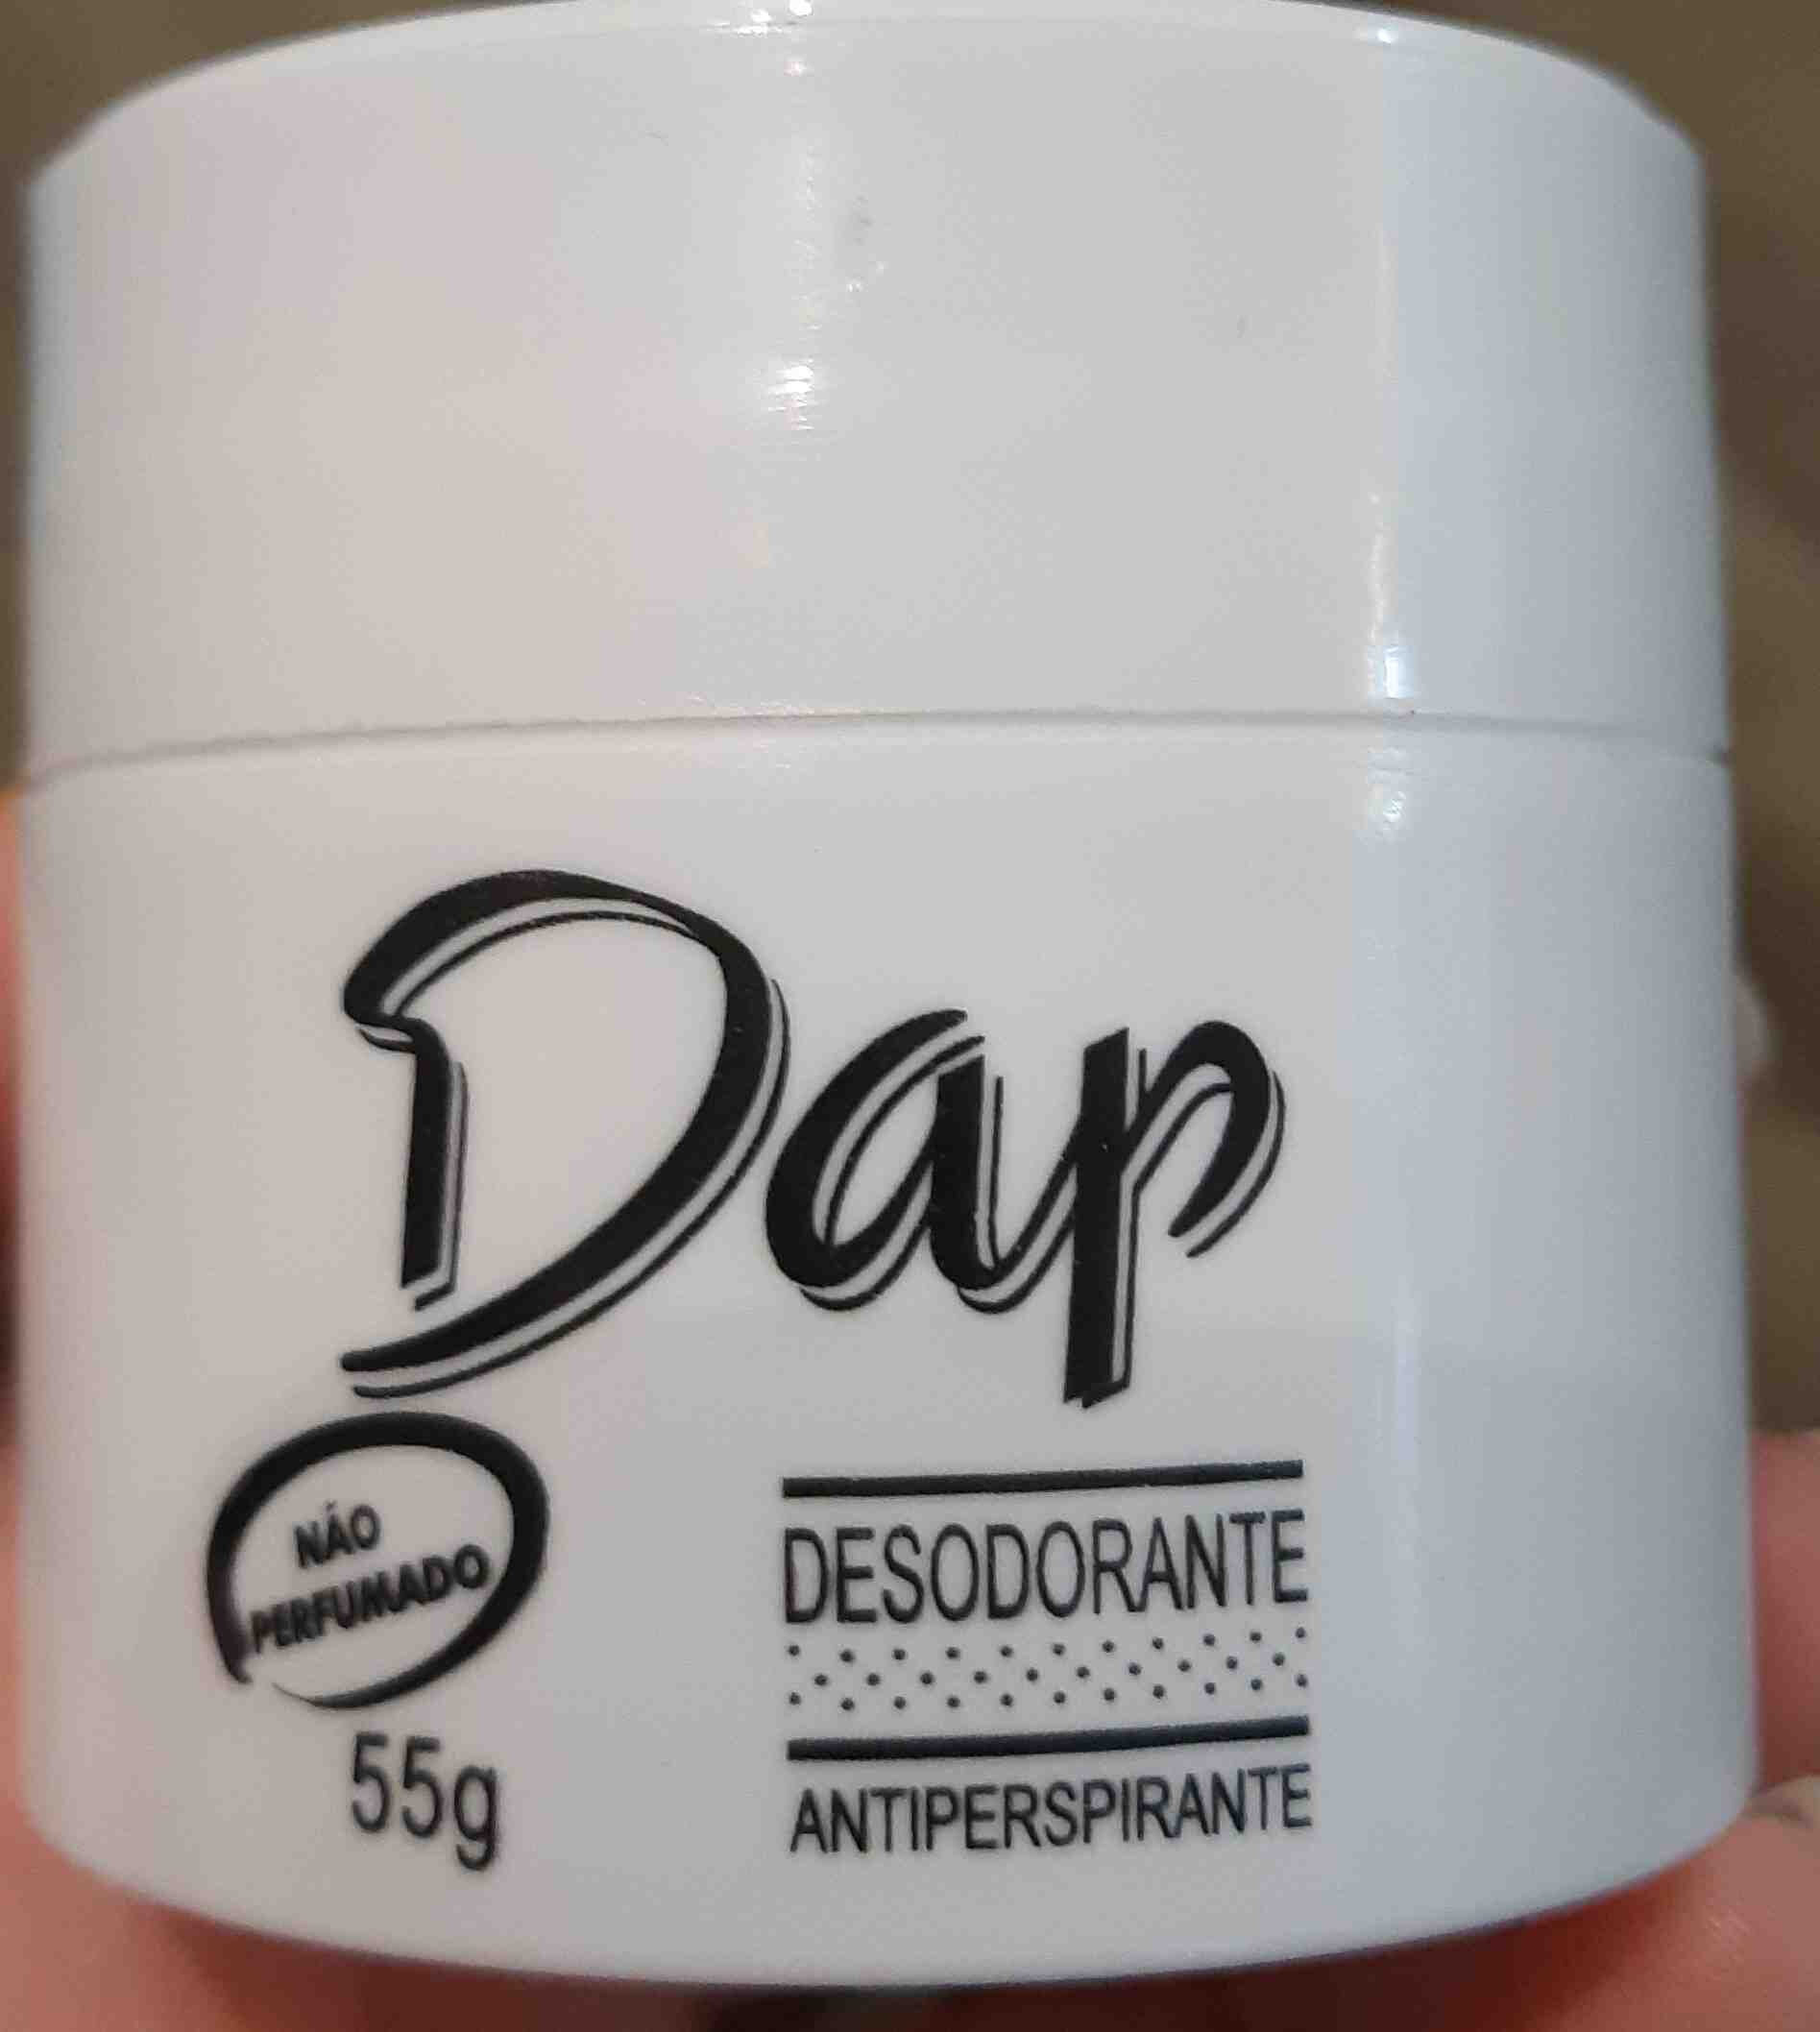 Dap desodorante - 製品 - en